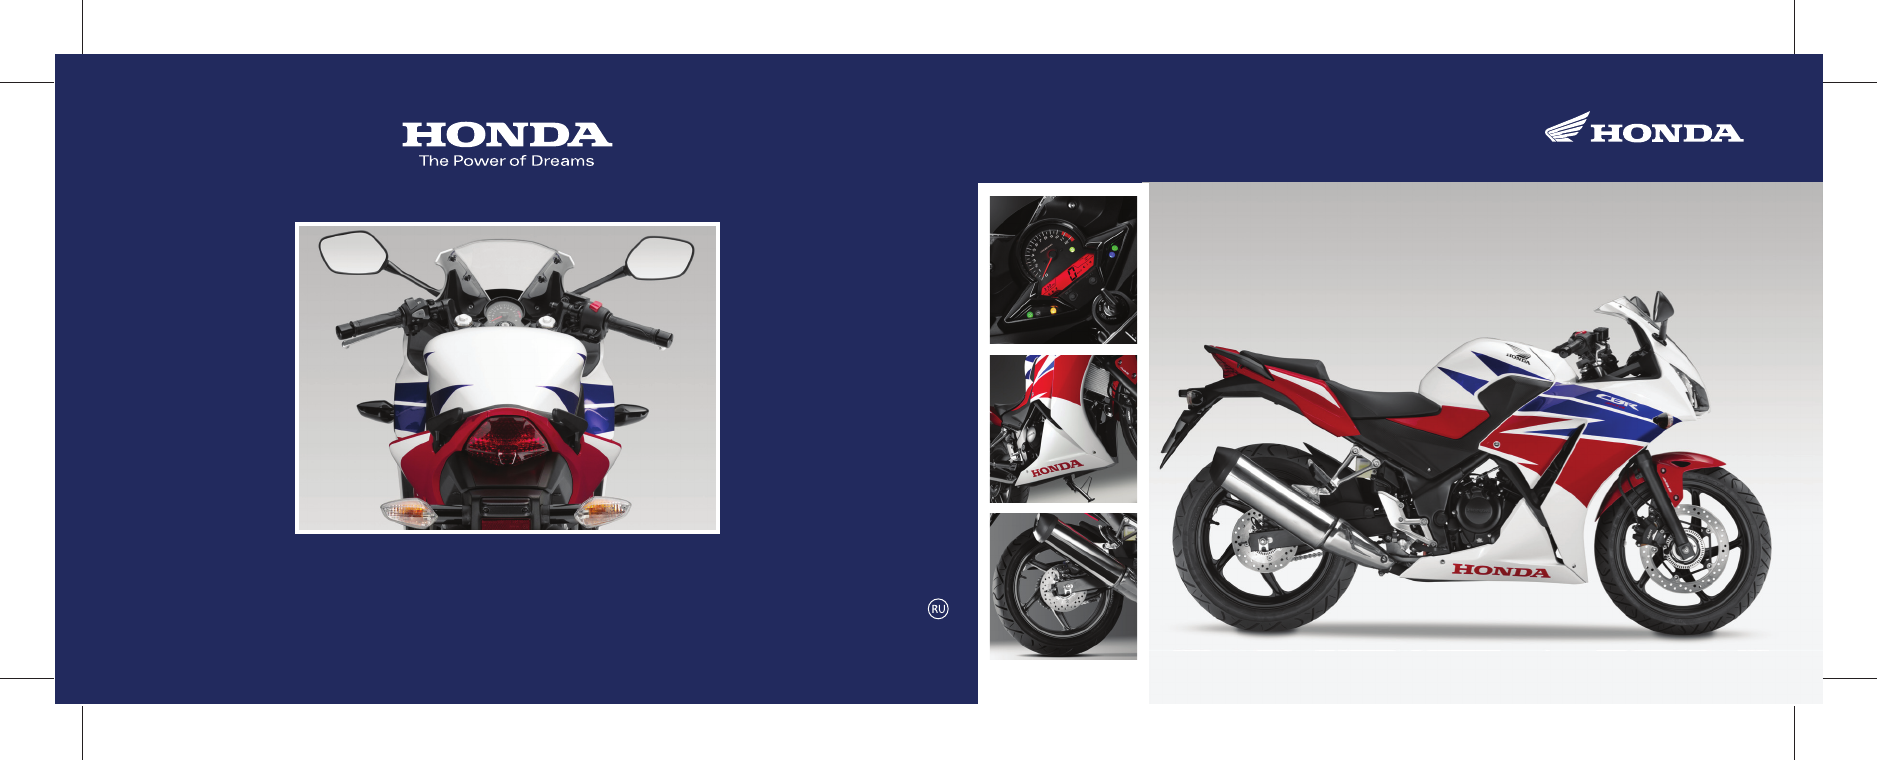 Скачать руководство по эксплуатации honda cbr954rr, инструкция по применению на мотоциклы pdf бесплатно